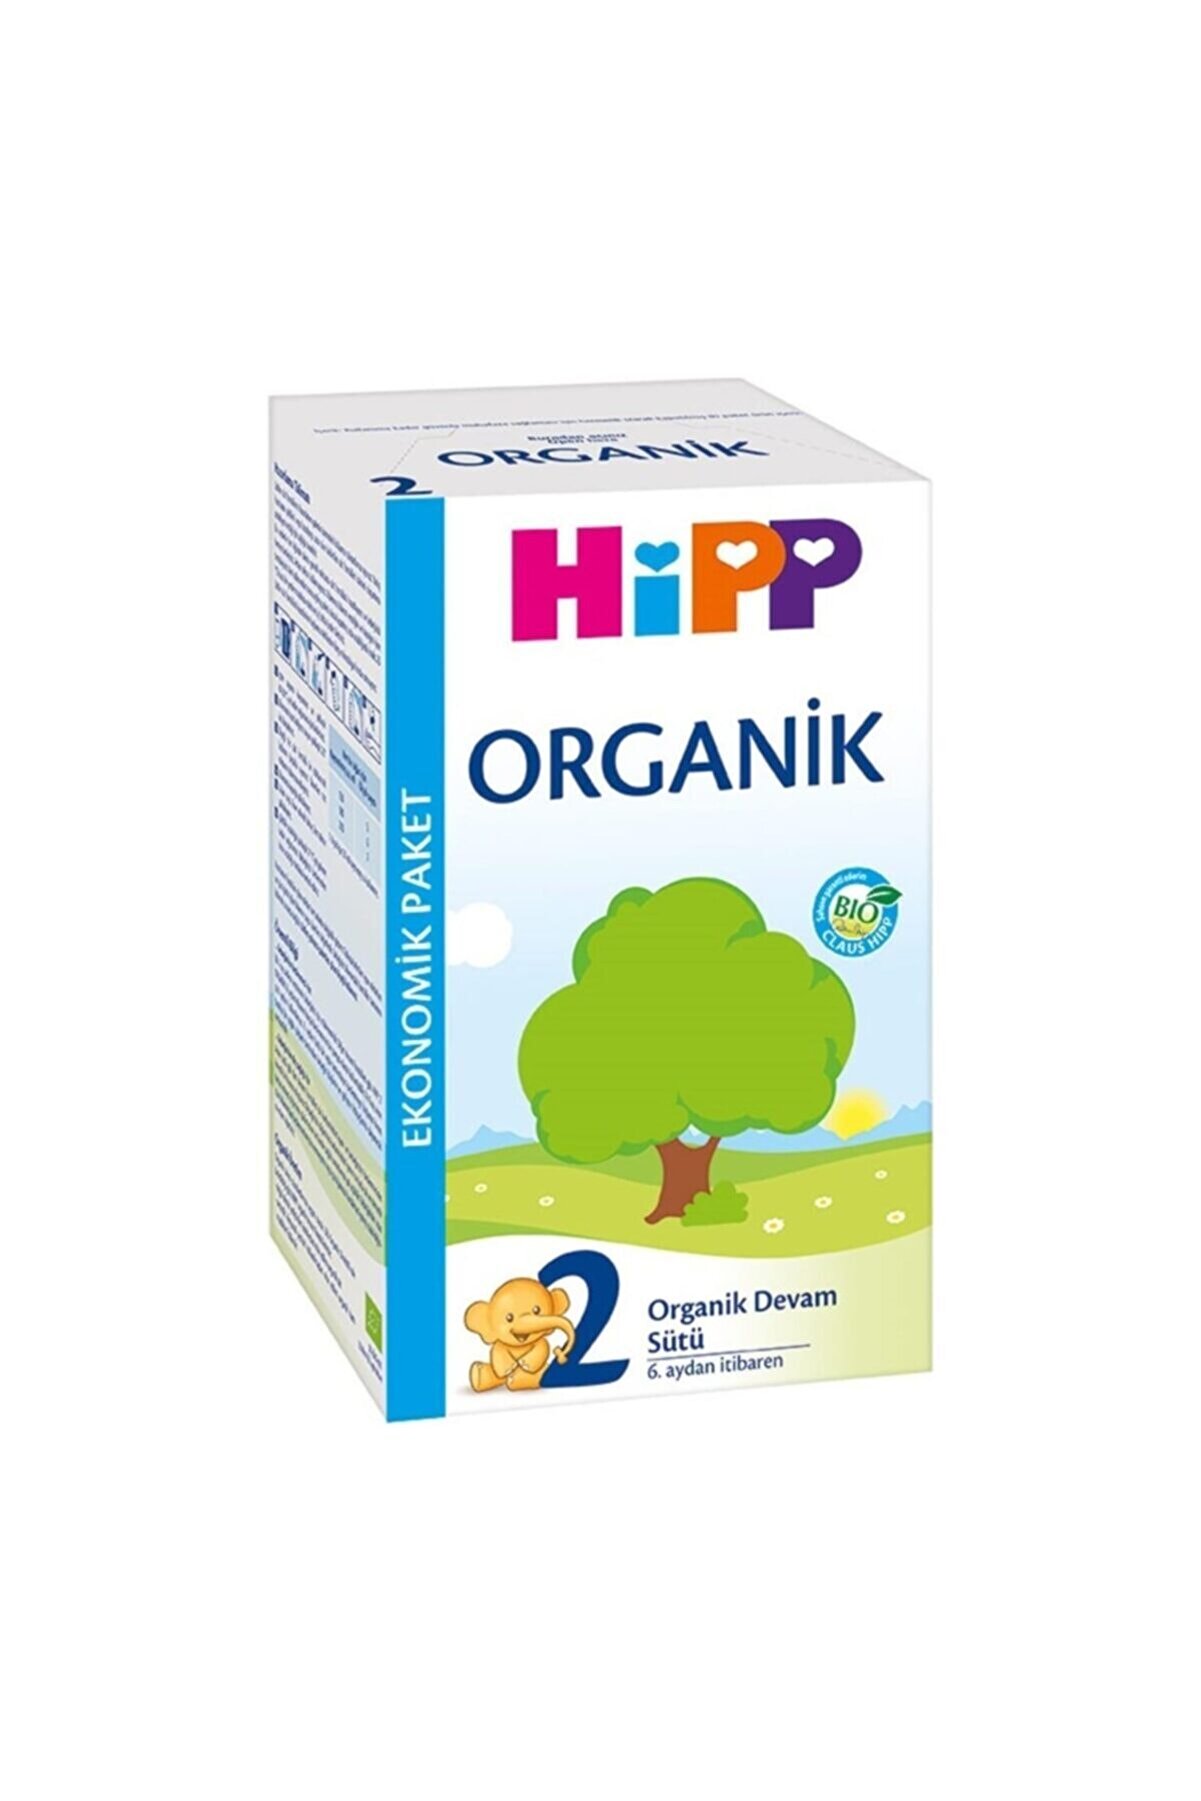 Hipp Boze 2 Organik Devam Sütü 600 Gr